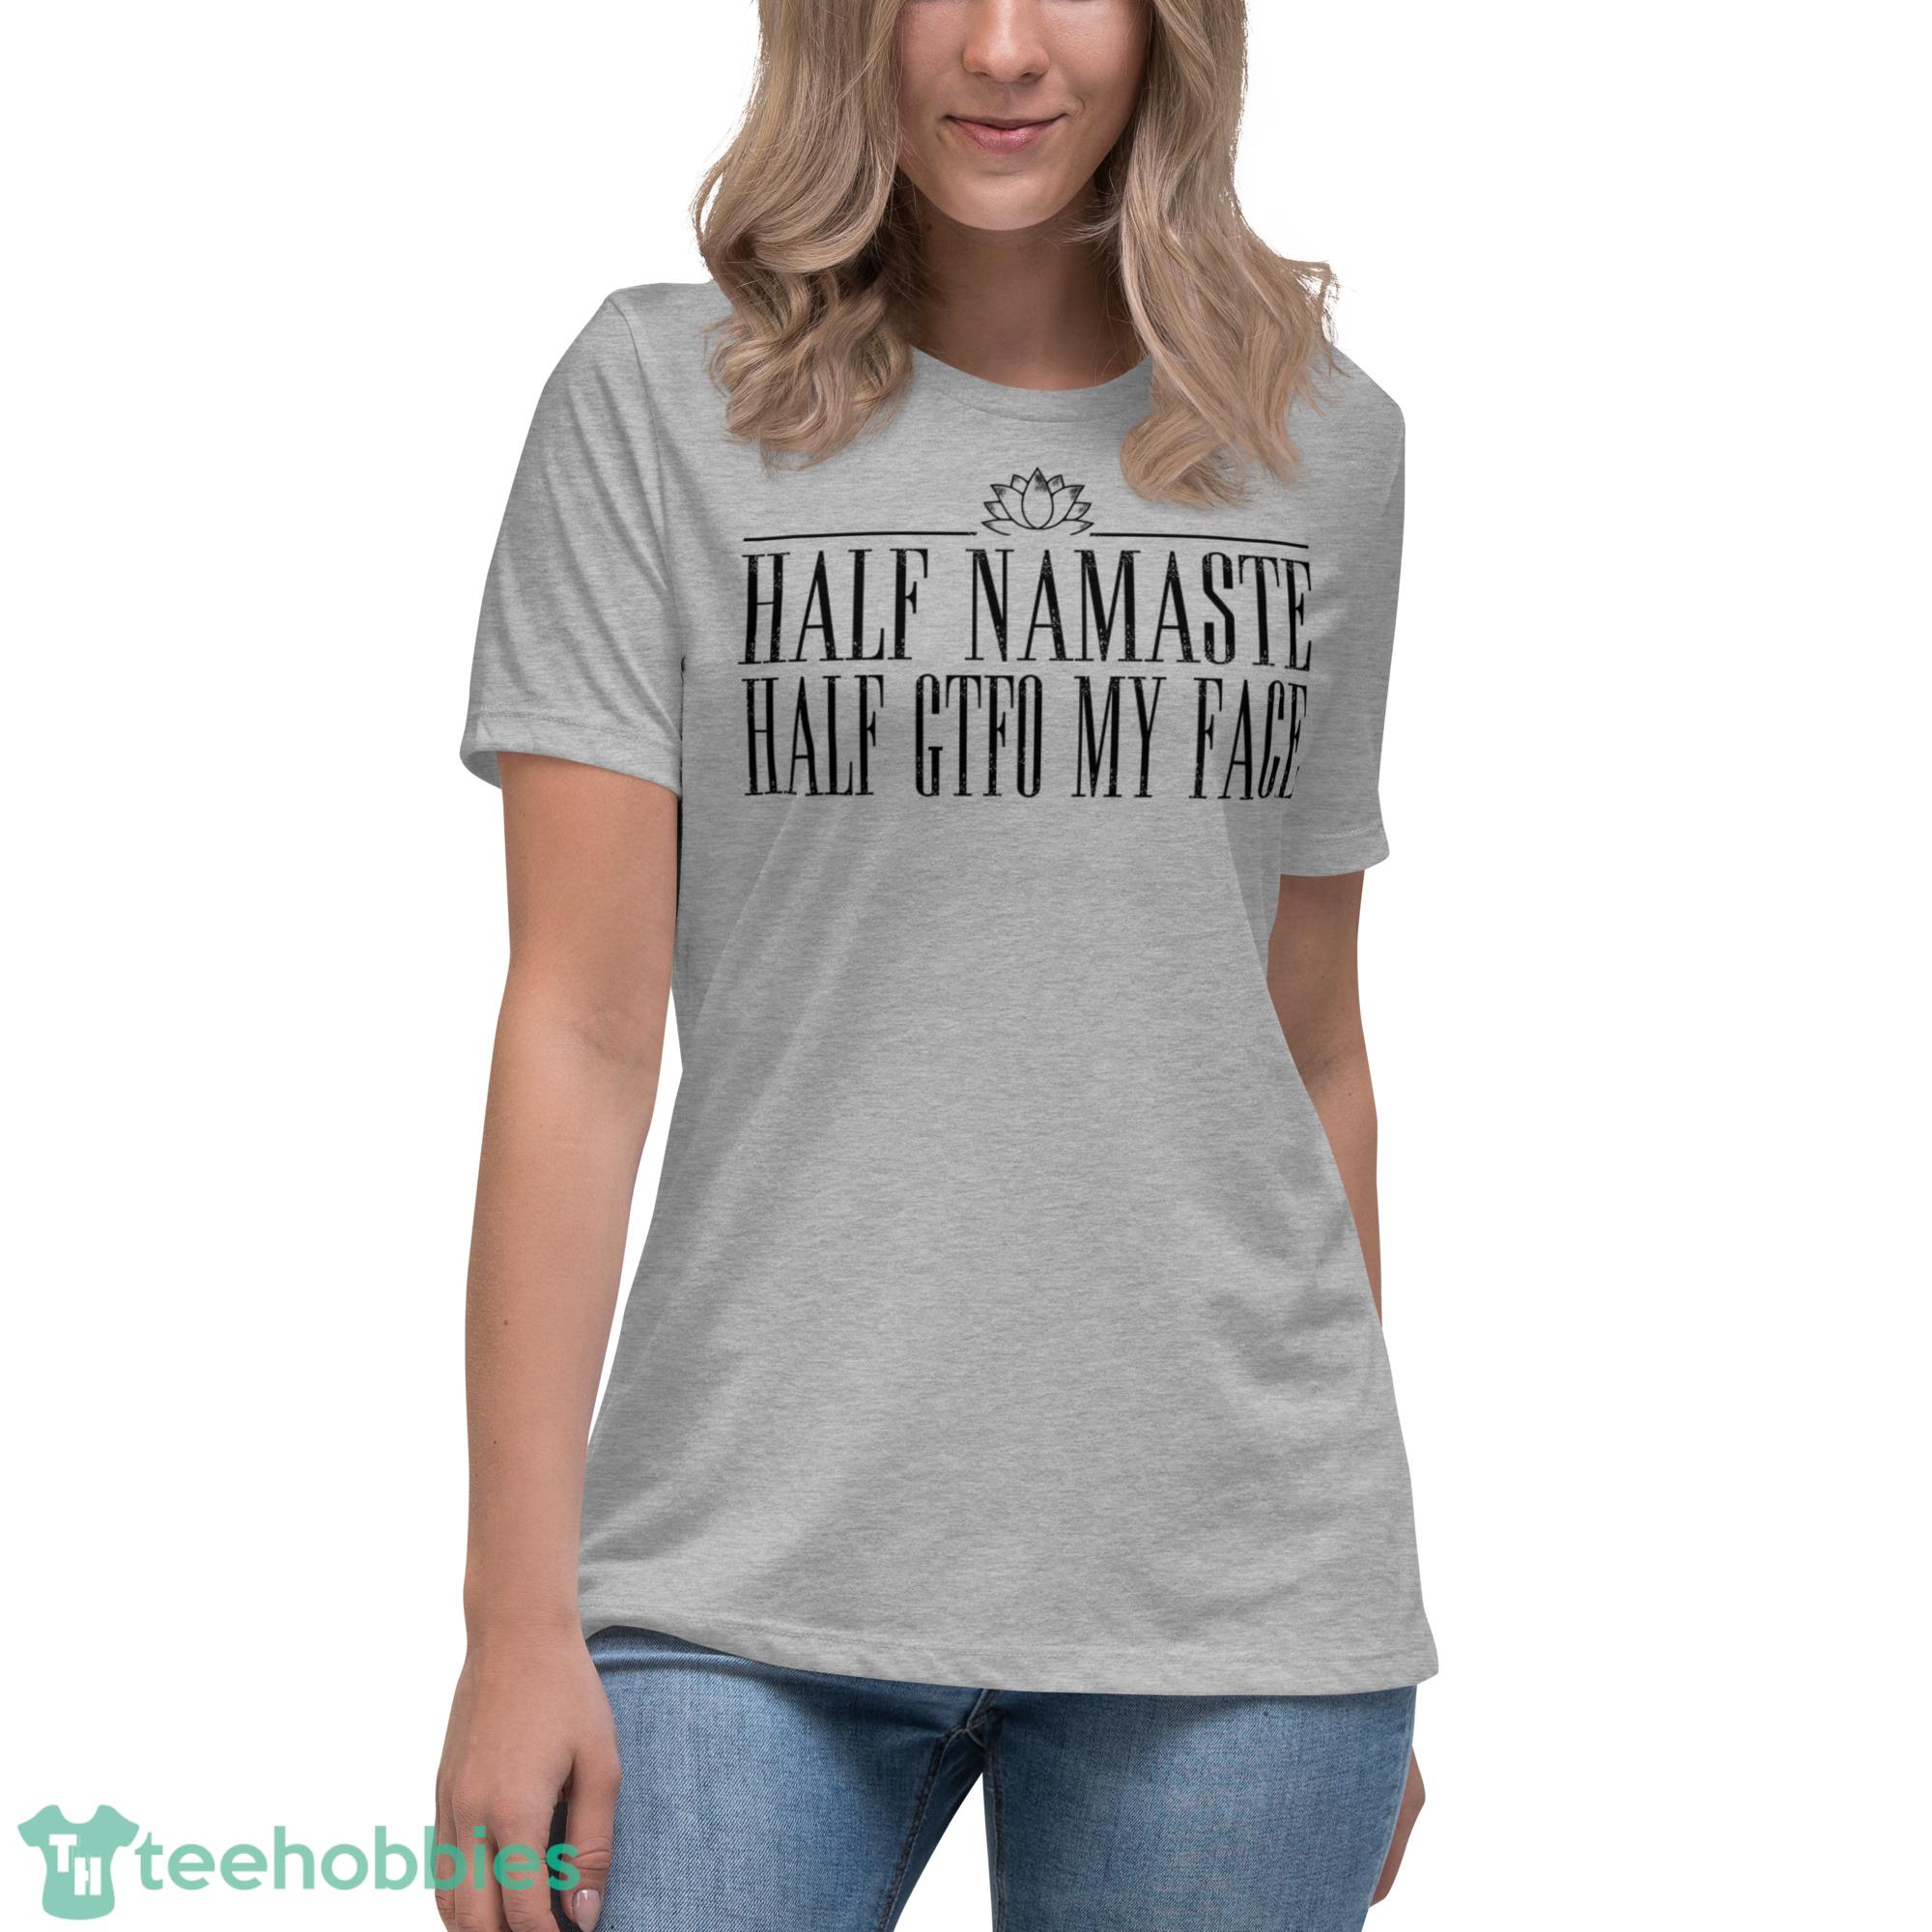 Namaste at Disney Disney Shirts for Women Disney Shirts Women's